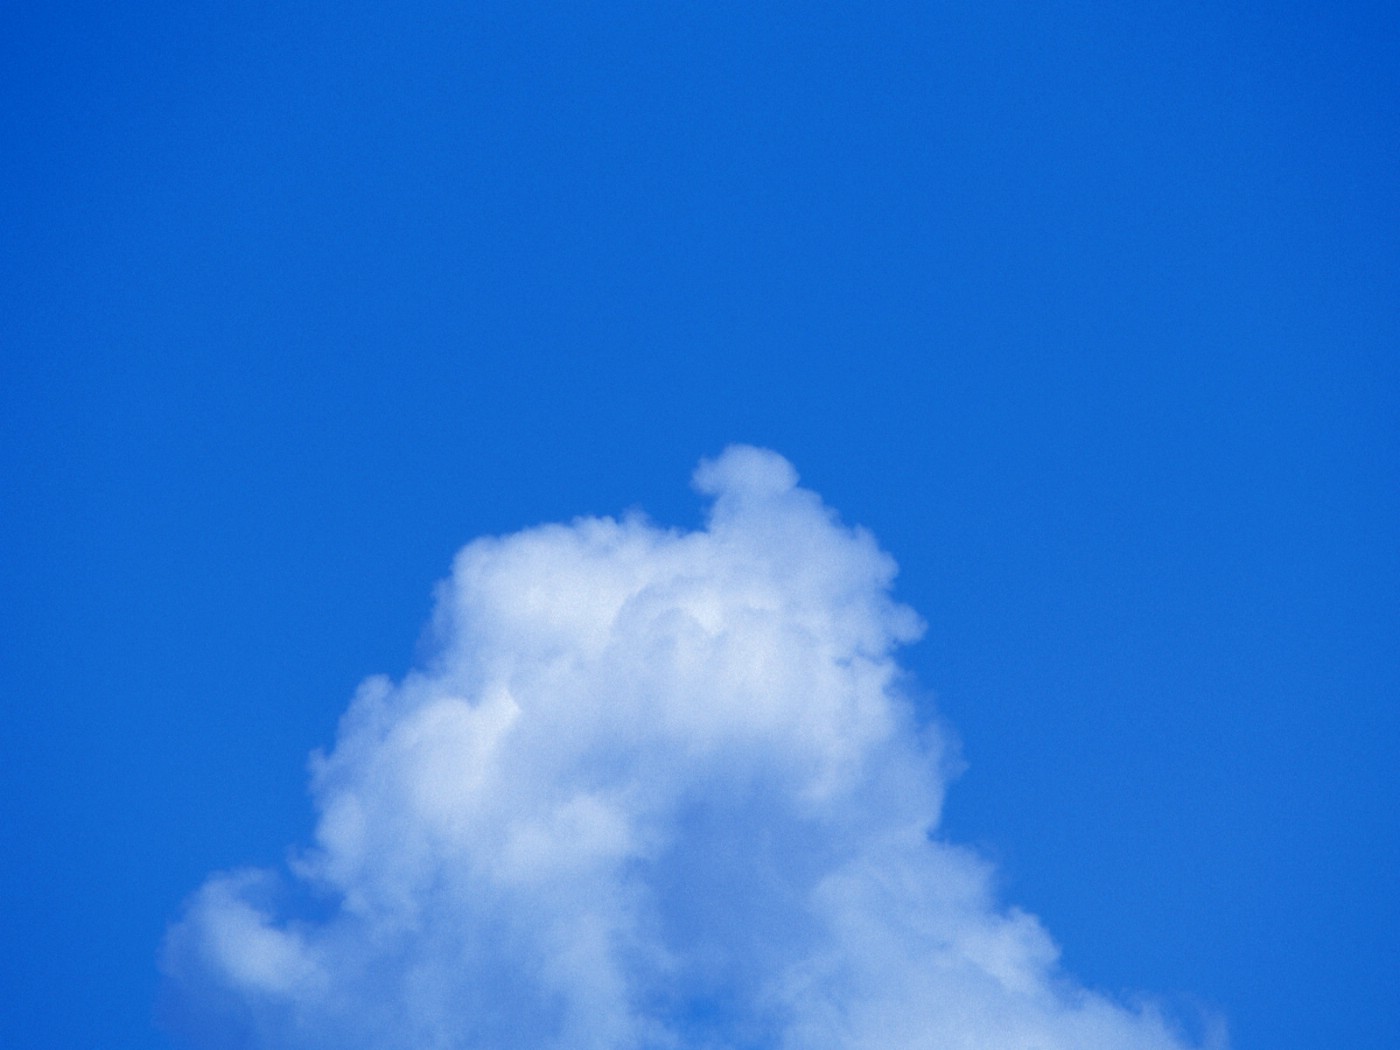 壁纸1400x1050 天空白云图片 天空云彩壁纸 蔚蓝天空-蓝天白云壁纸壁纸 蔚蓝天空-蓝天白云壁纸图片 蔚蓝天空-蓝天白云壁纸素材 风景壁纸 风景图库 风景图片素材桌面壁纸